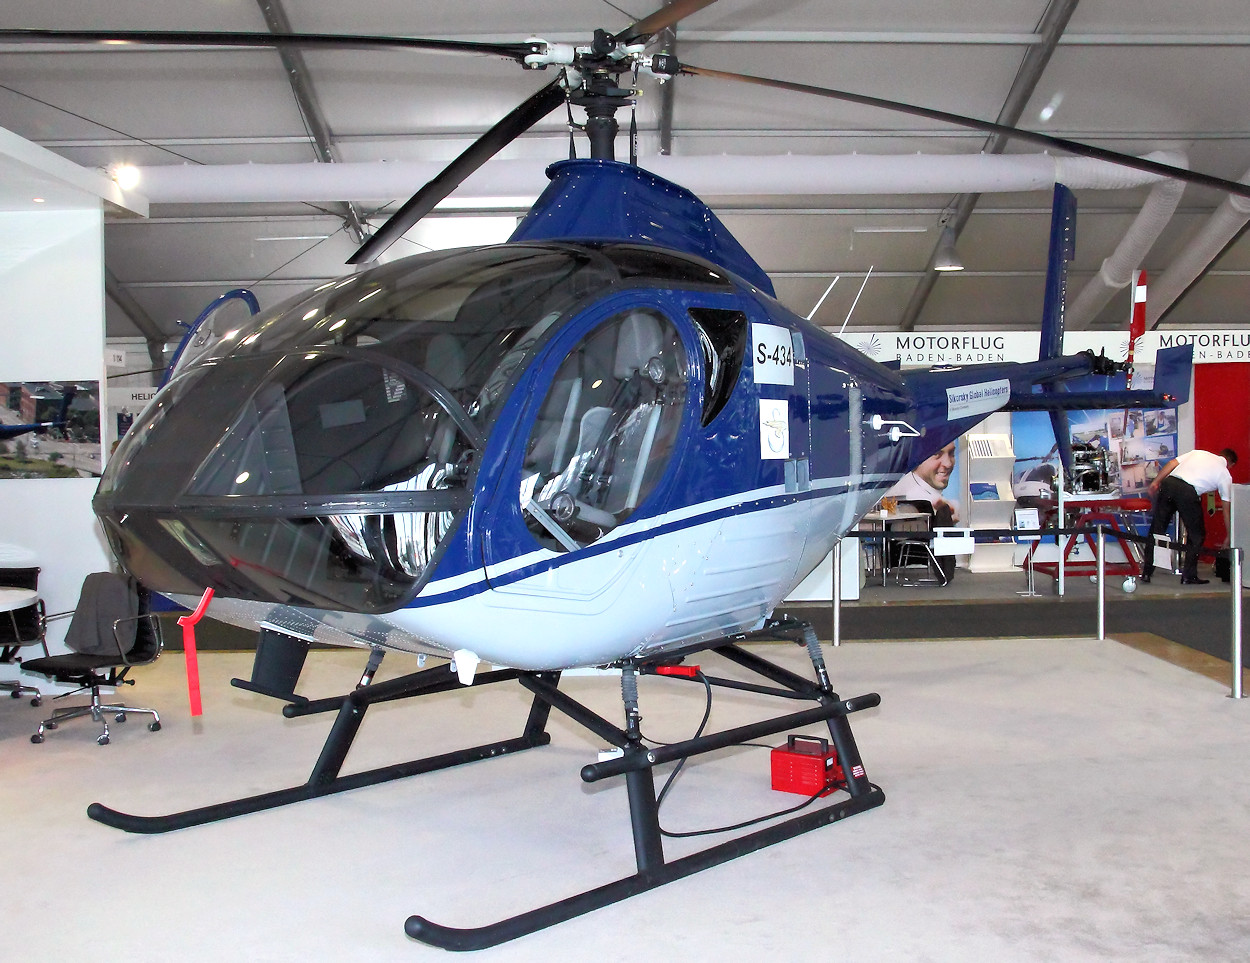 Sikorsky S-434 - Weiterentwicklung des Hubschraubers "Schweizer 333"